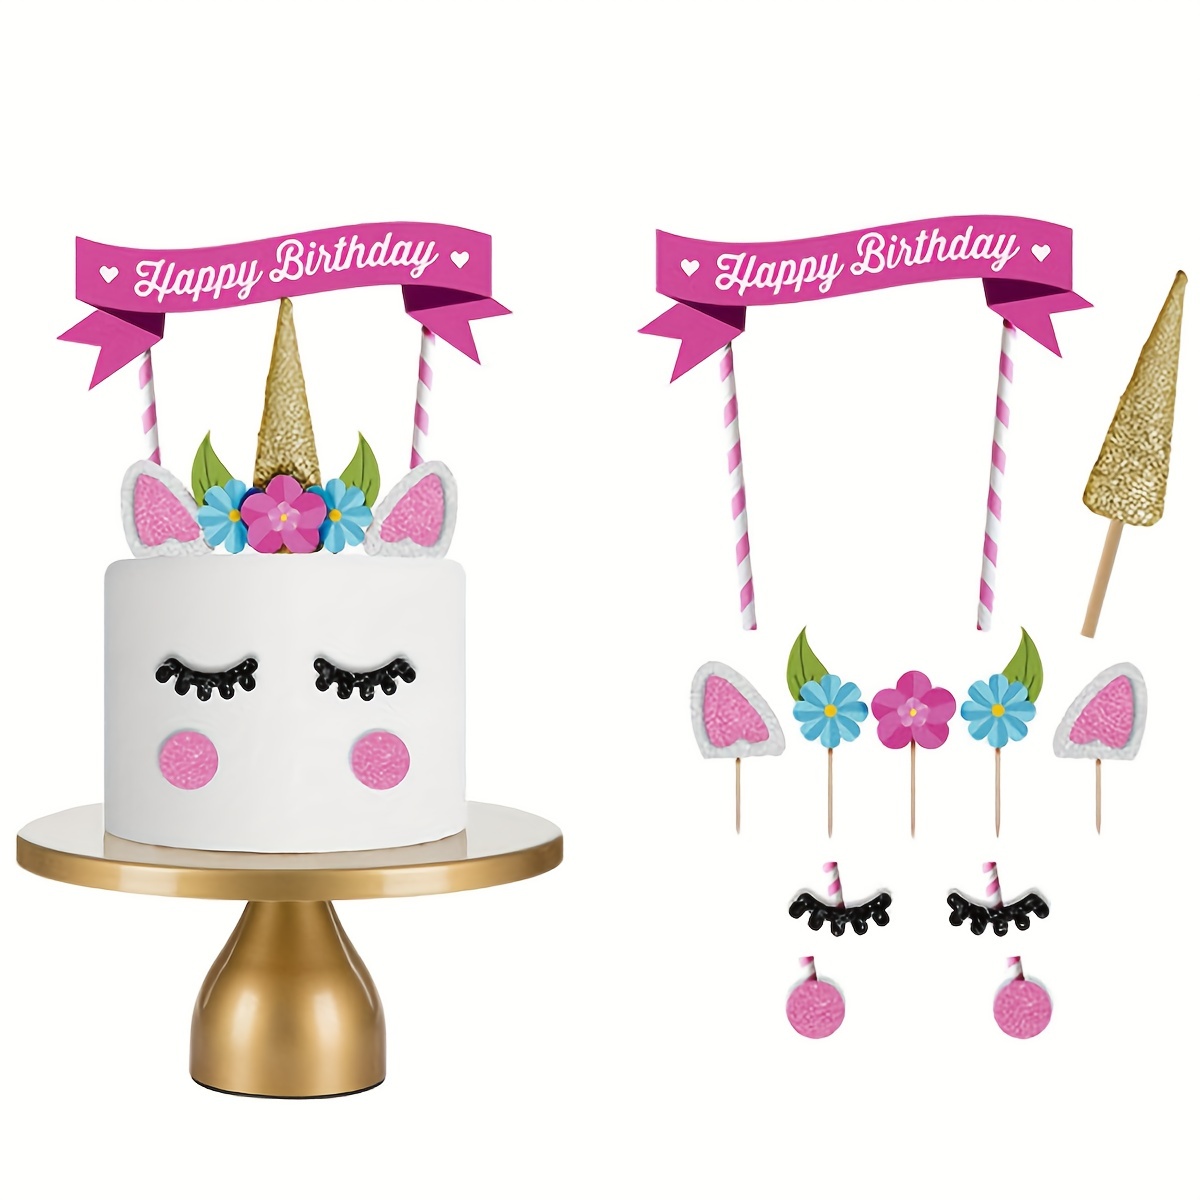  Decoración para tartas de cumpleaños con temática de unicornio,  suministros de decoración de fiesta de cumpleaños para niños, mujeres u  hombres, baby shower, fiesta de primer cumpleaños, oro rosa y plata 